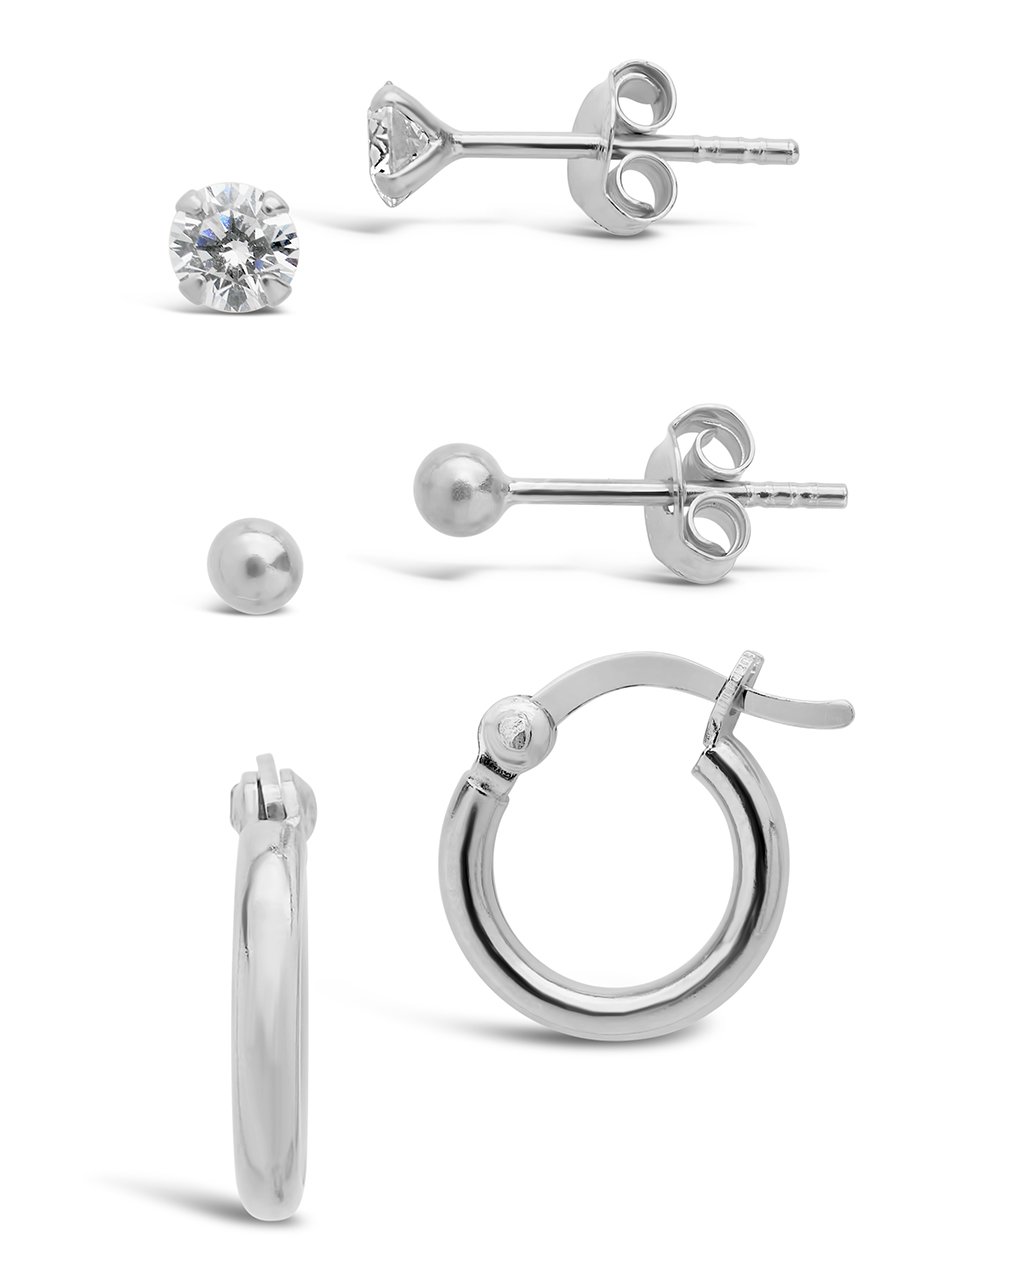 Sterling Silver Sphere, CZ Stud, & Hoop Set of 3 Earring Sterling Forever 